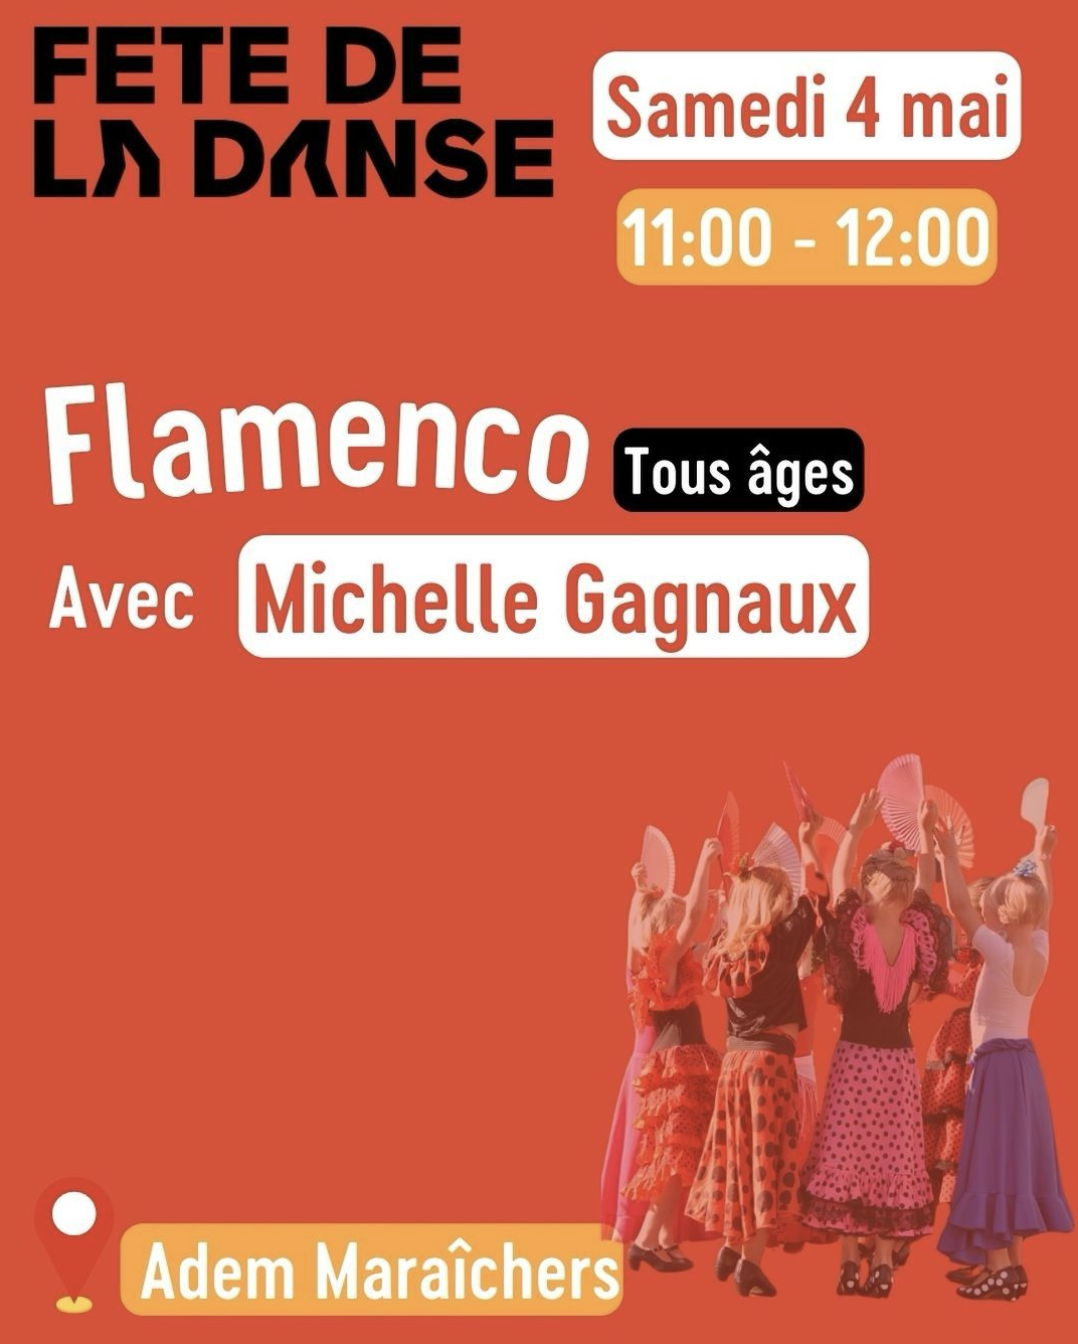 Samedi 4 mai - Participation élèves à la fête de la danse à Genève